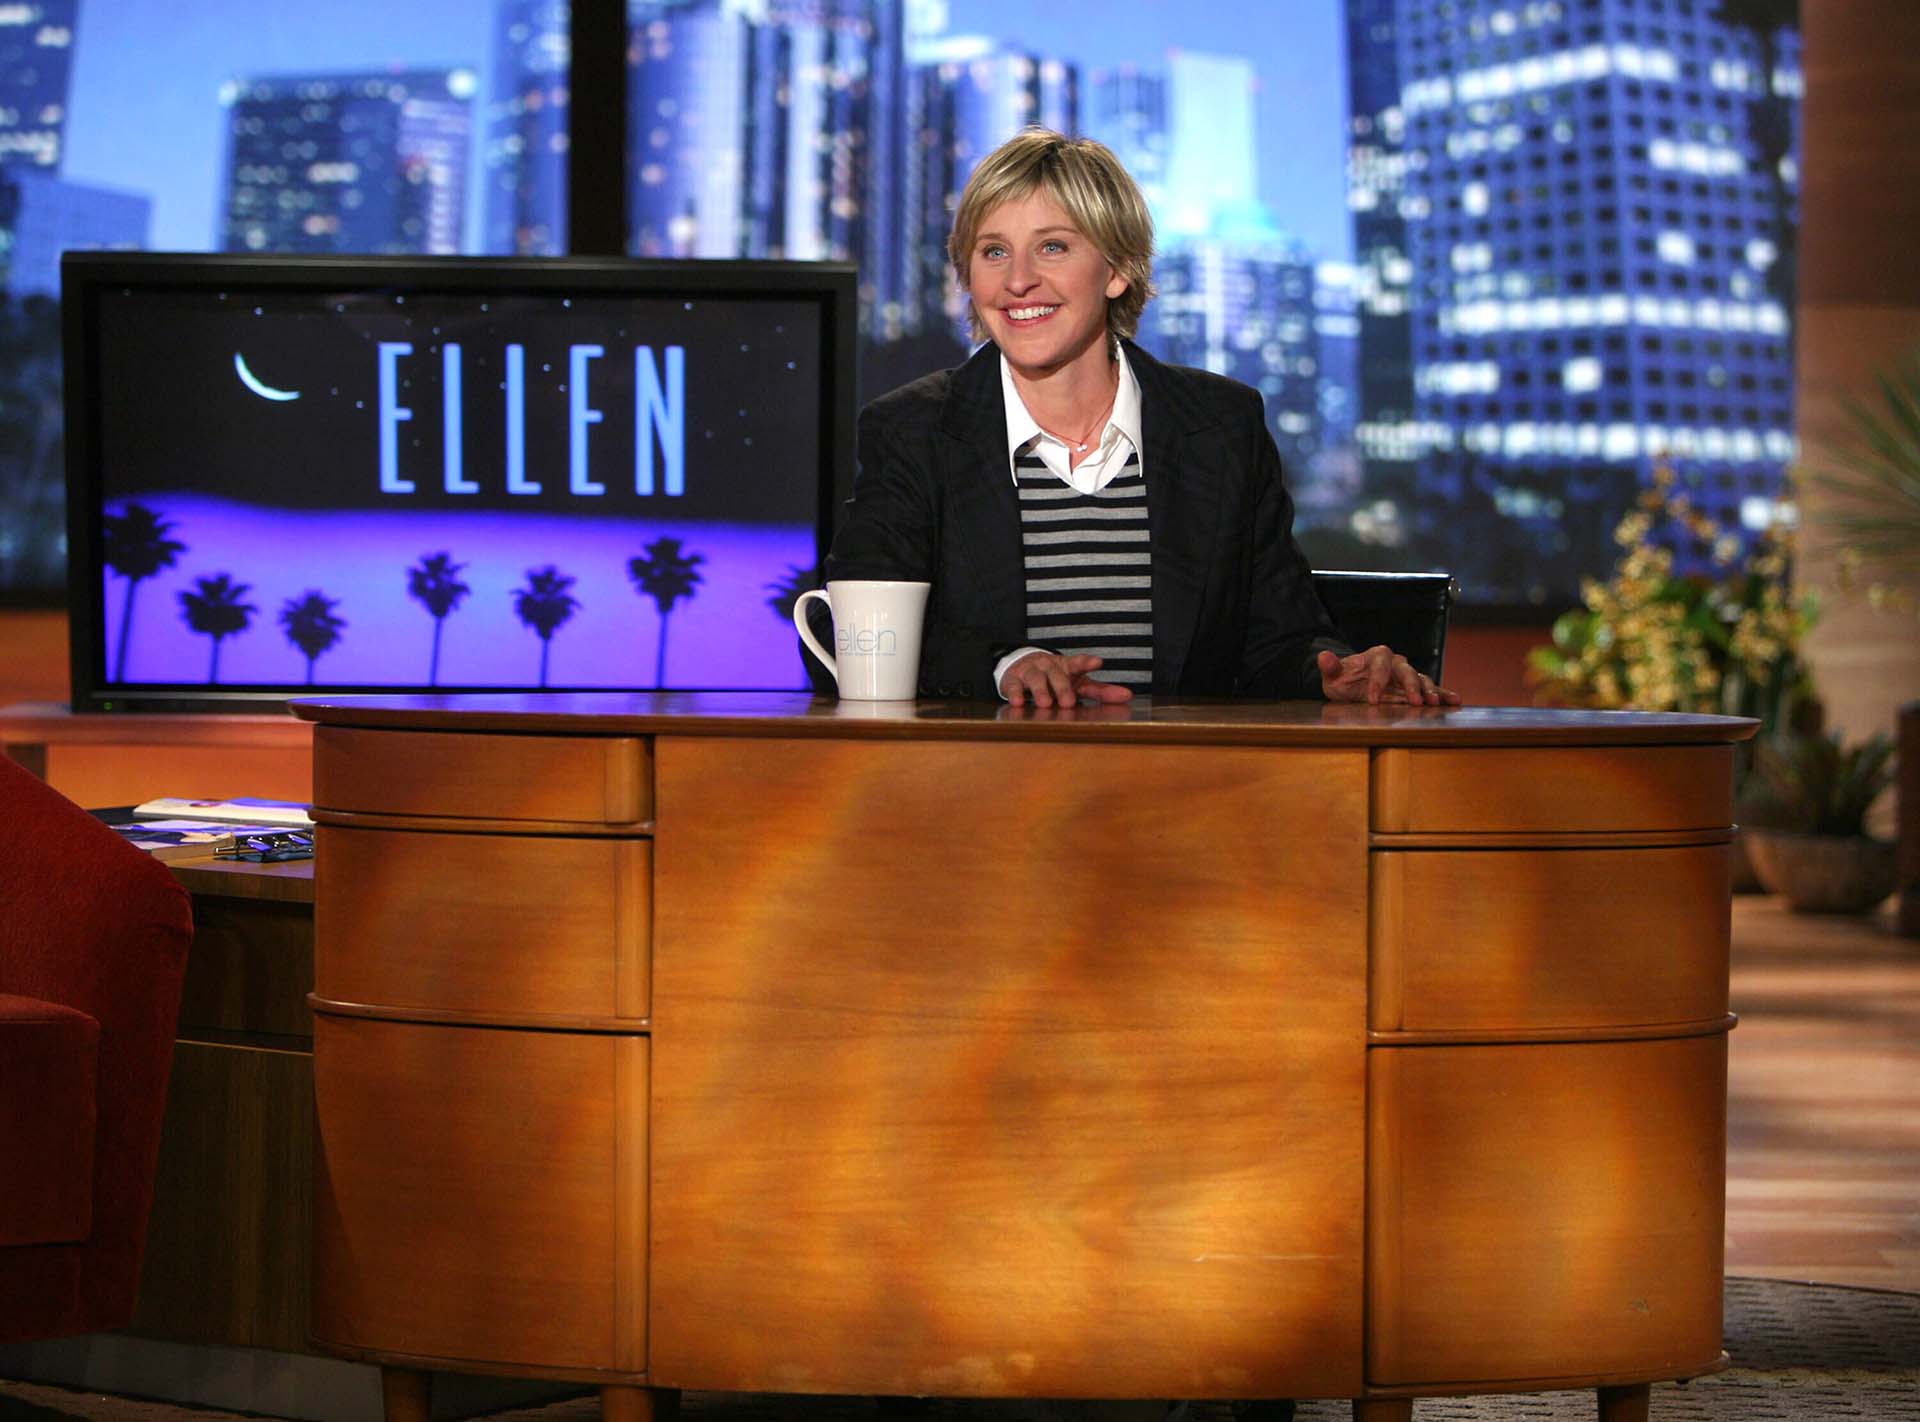 Desde el inicio de su nueva temporada, Ellen se ha mostrado más afable e incluso cambió su forma de peinarse, en un intento por refrescar su imagen (Foto: Shuttersrock)